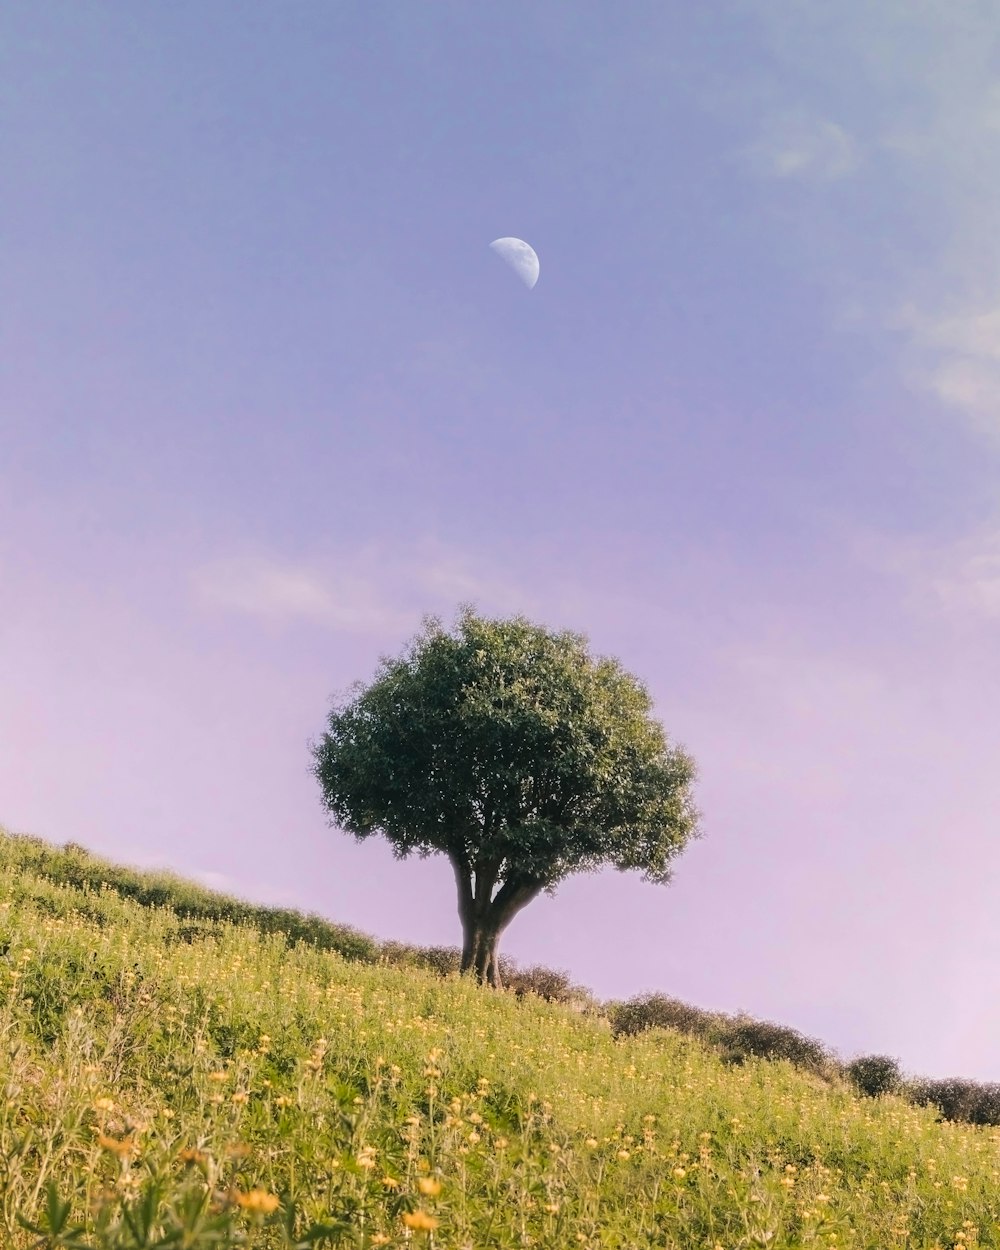 grüner Baum auf grünem Grasfeld unter blauem Himmel tagsüber